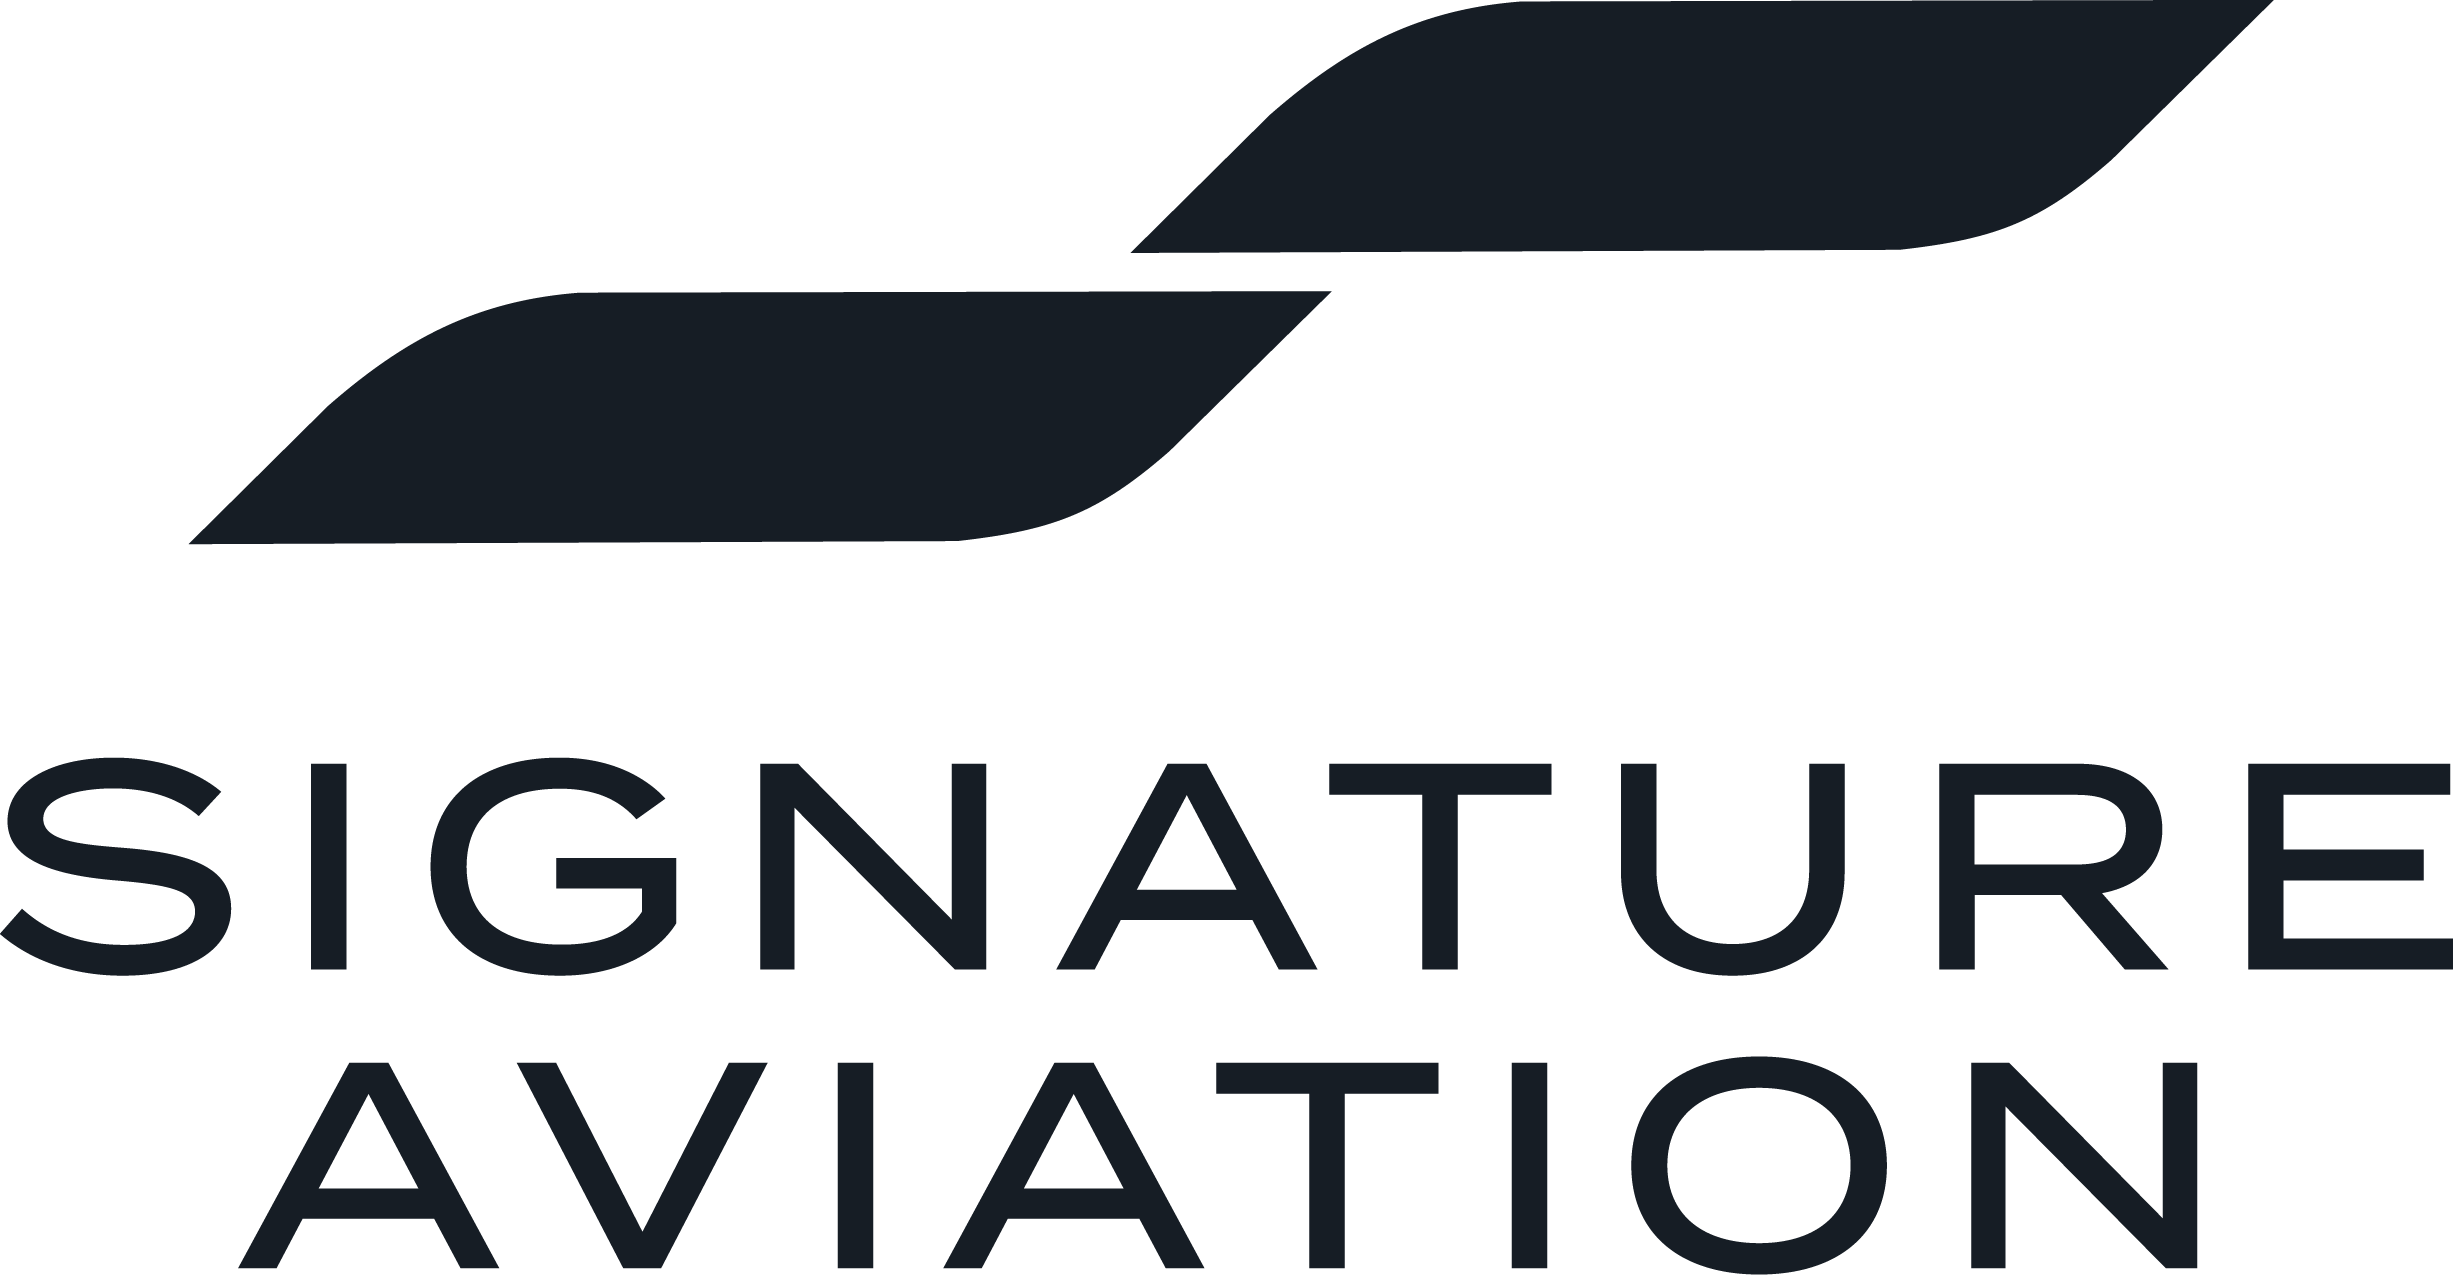 Signature Aviation